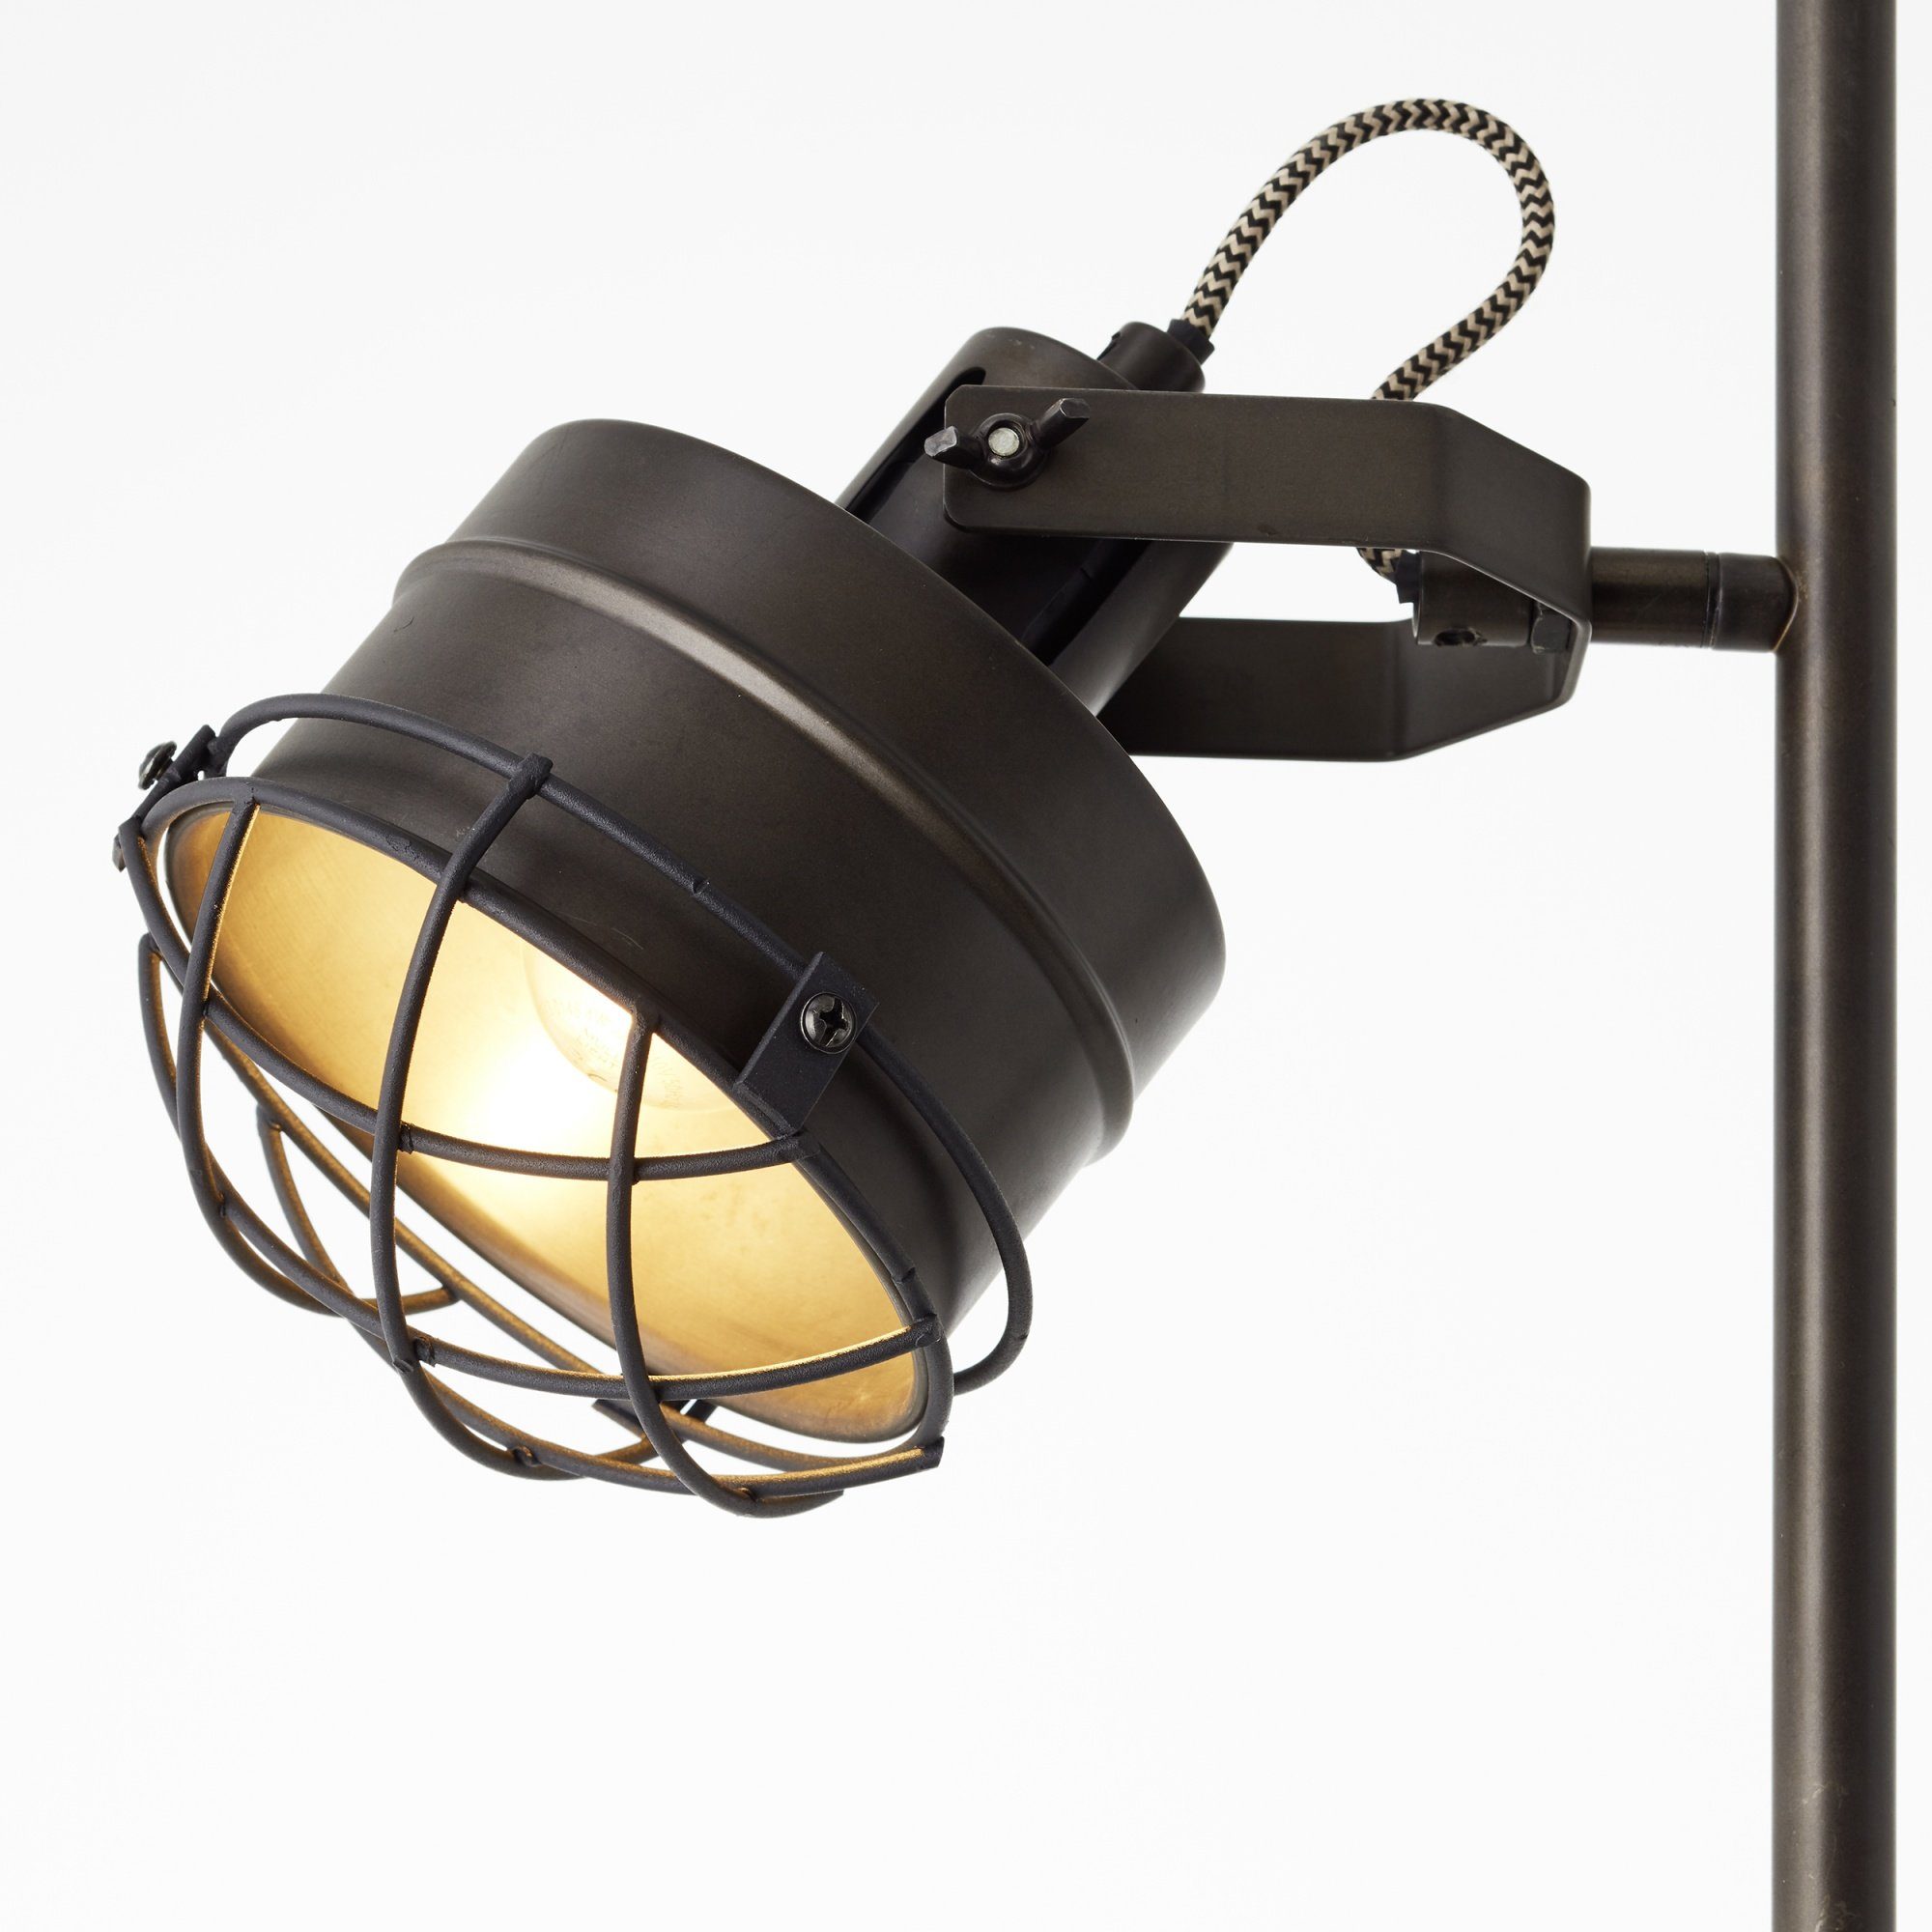 Metall/Holz, 1,5 Lightbox braun/schwarz Stehlampe, Leuchtmittel, ohne Standleuchte, E27, m Höhe, schwenkbar,